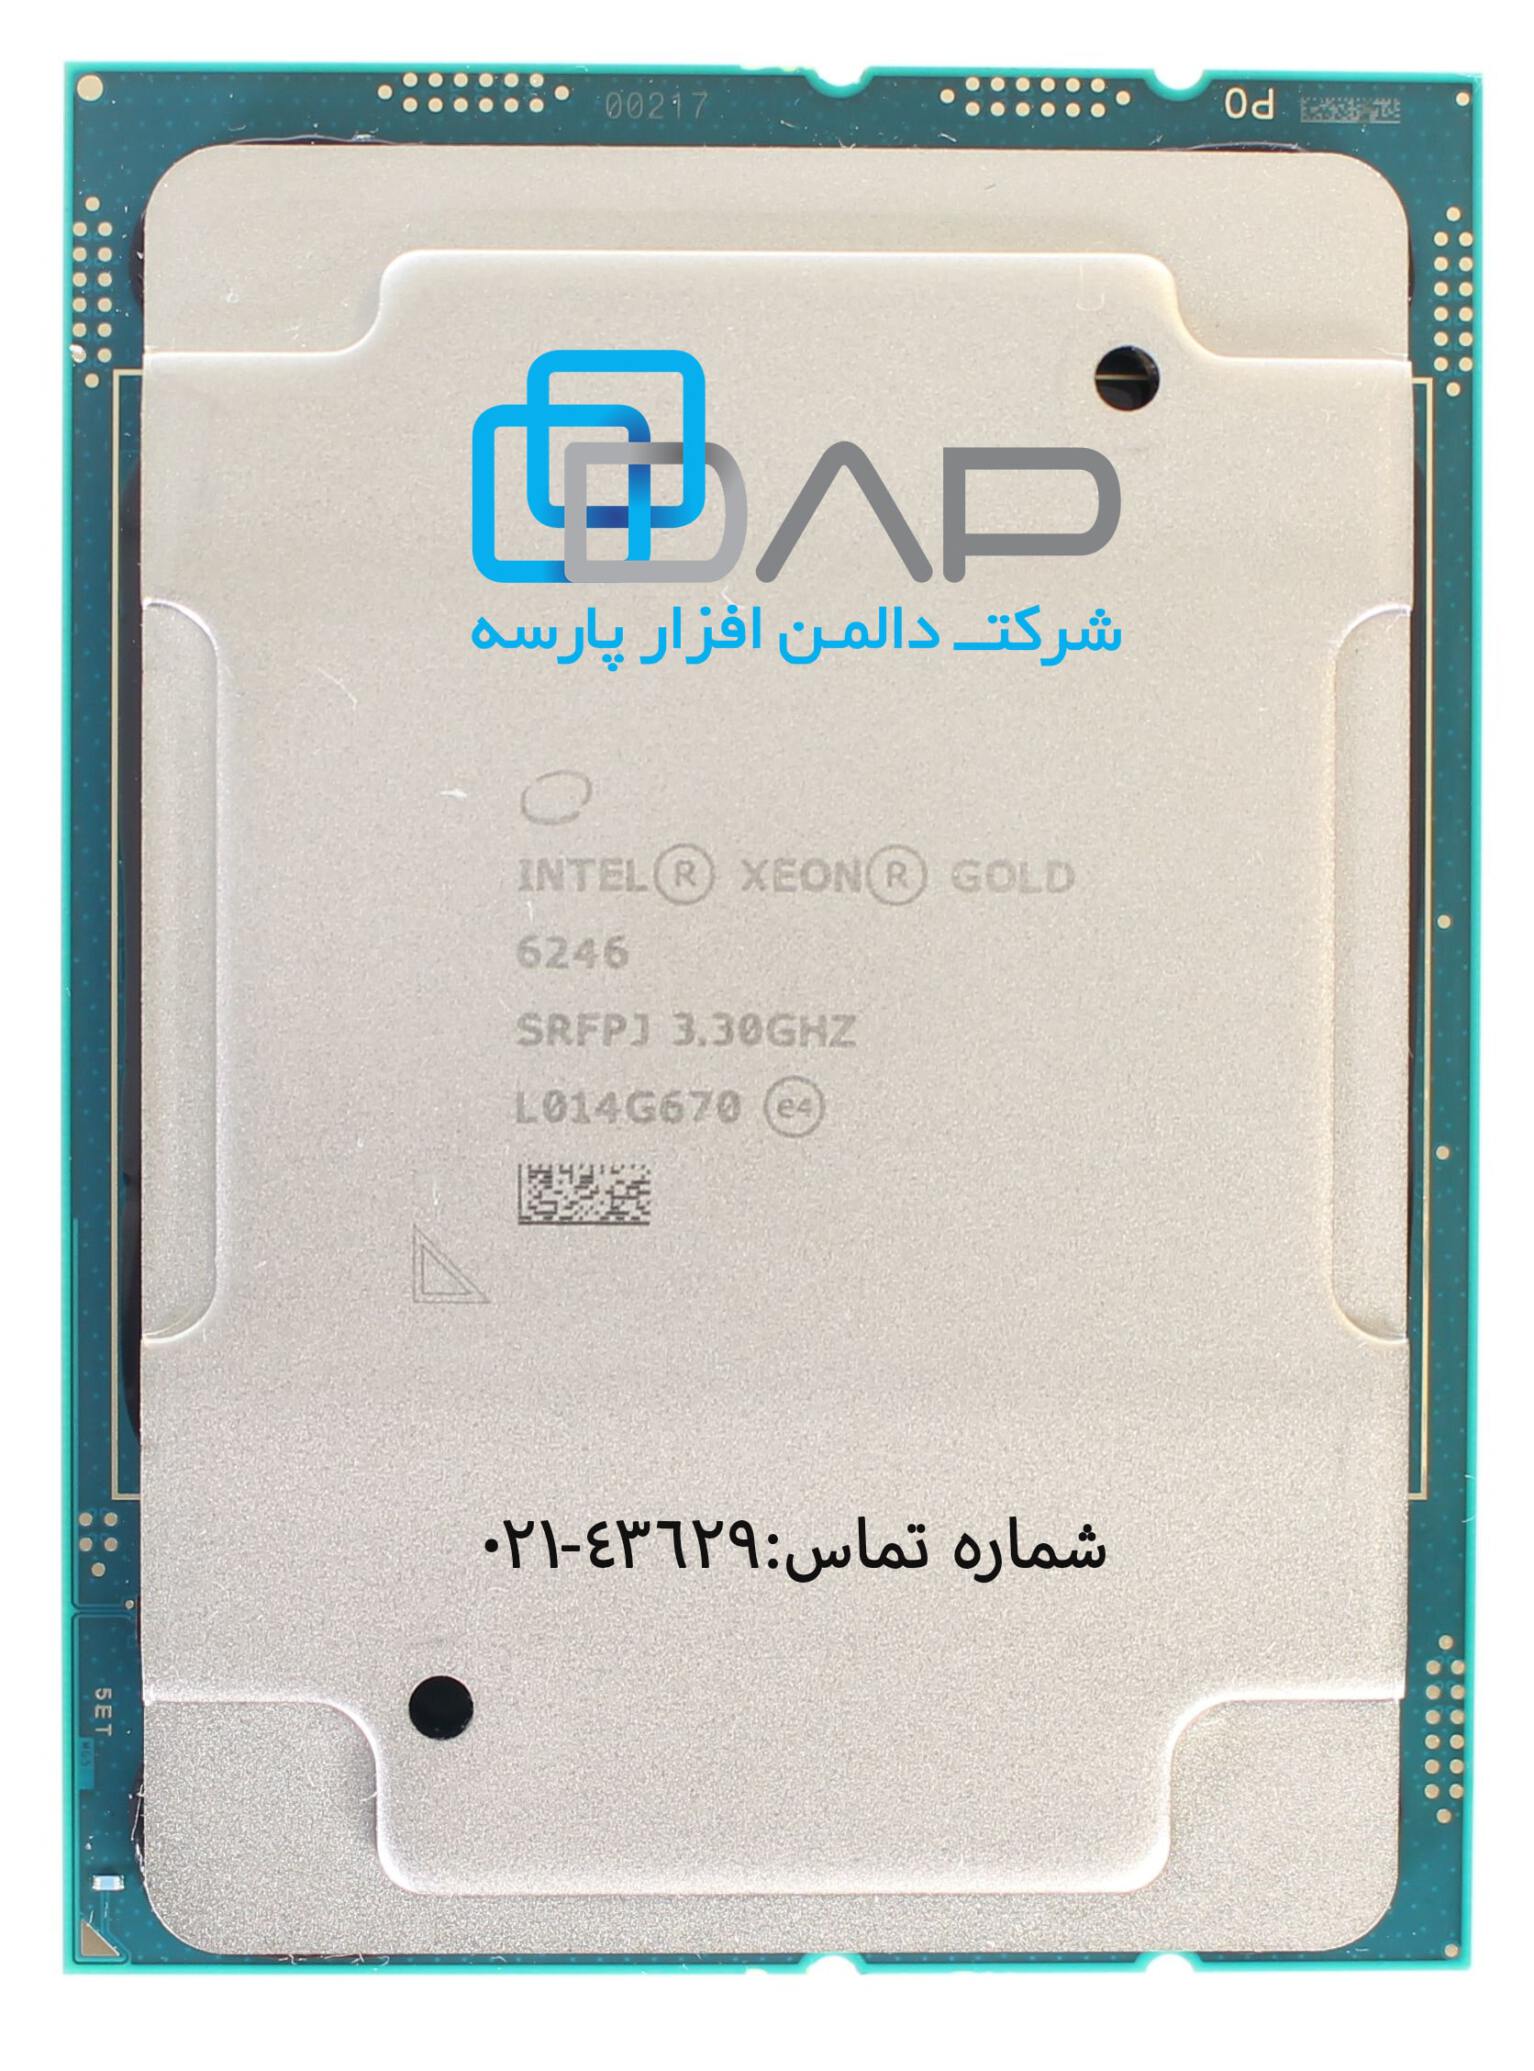  Intel CPU ( Xeon-Gold 6246) 